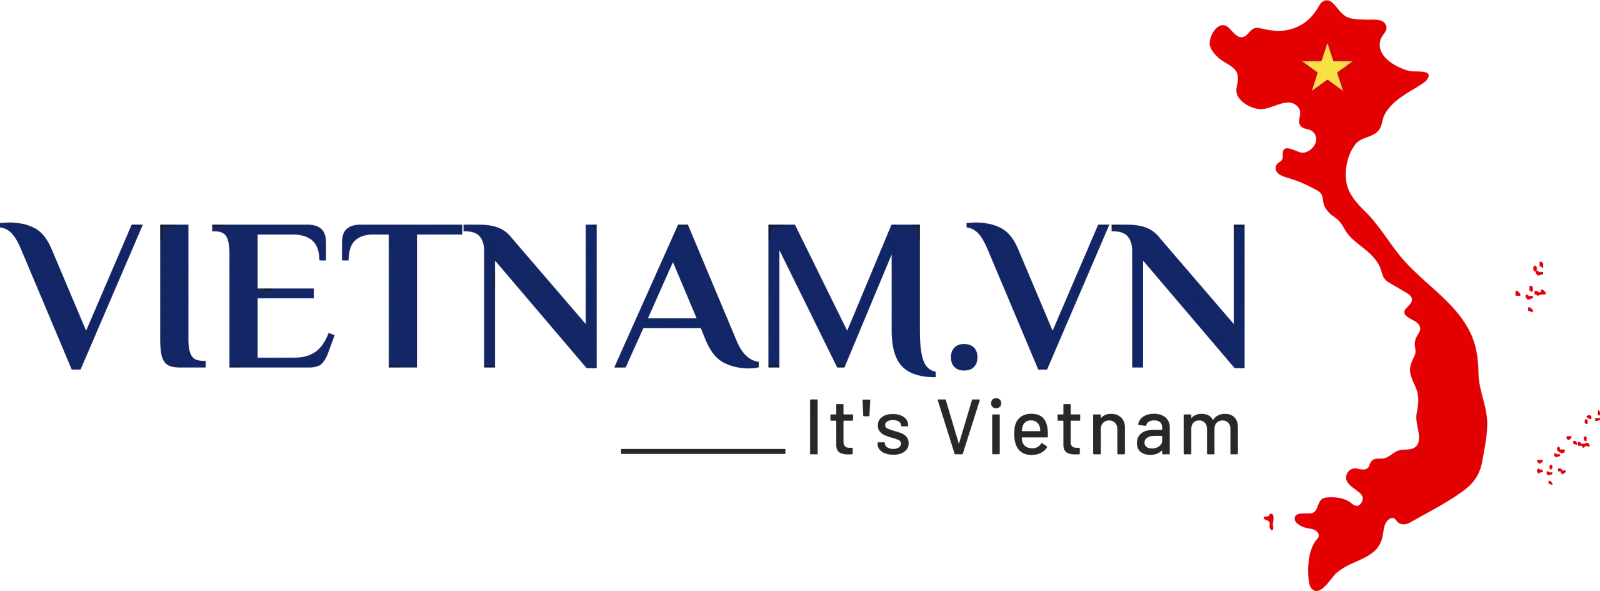 vietnamvn